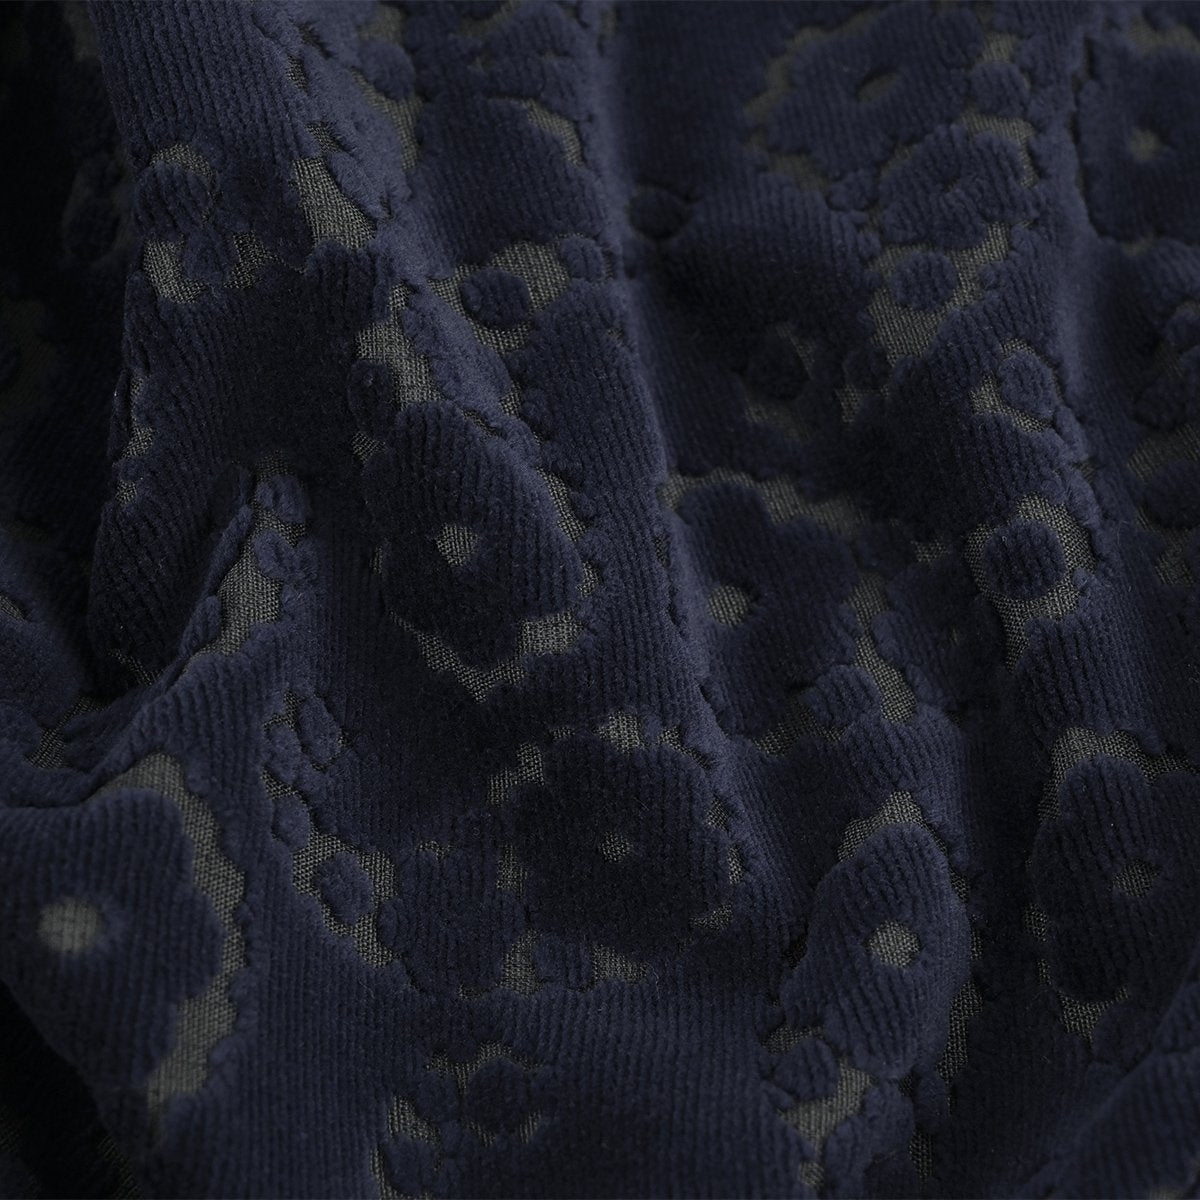 Navy Floral Velvet Fabric 99769